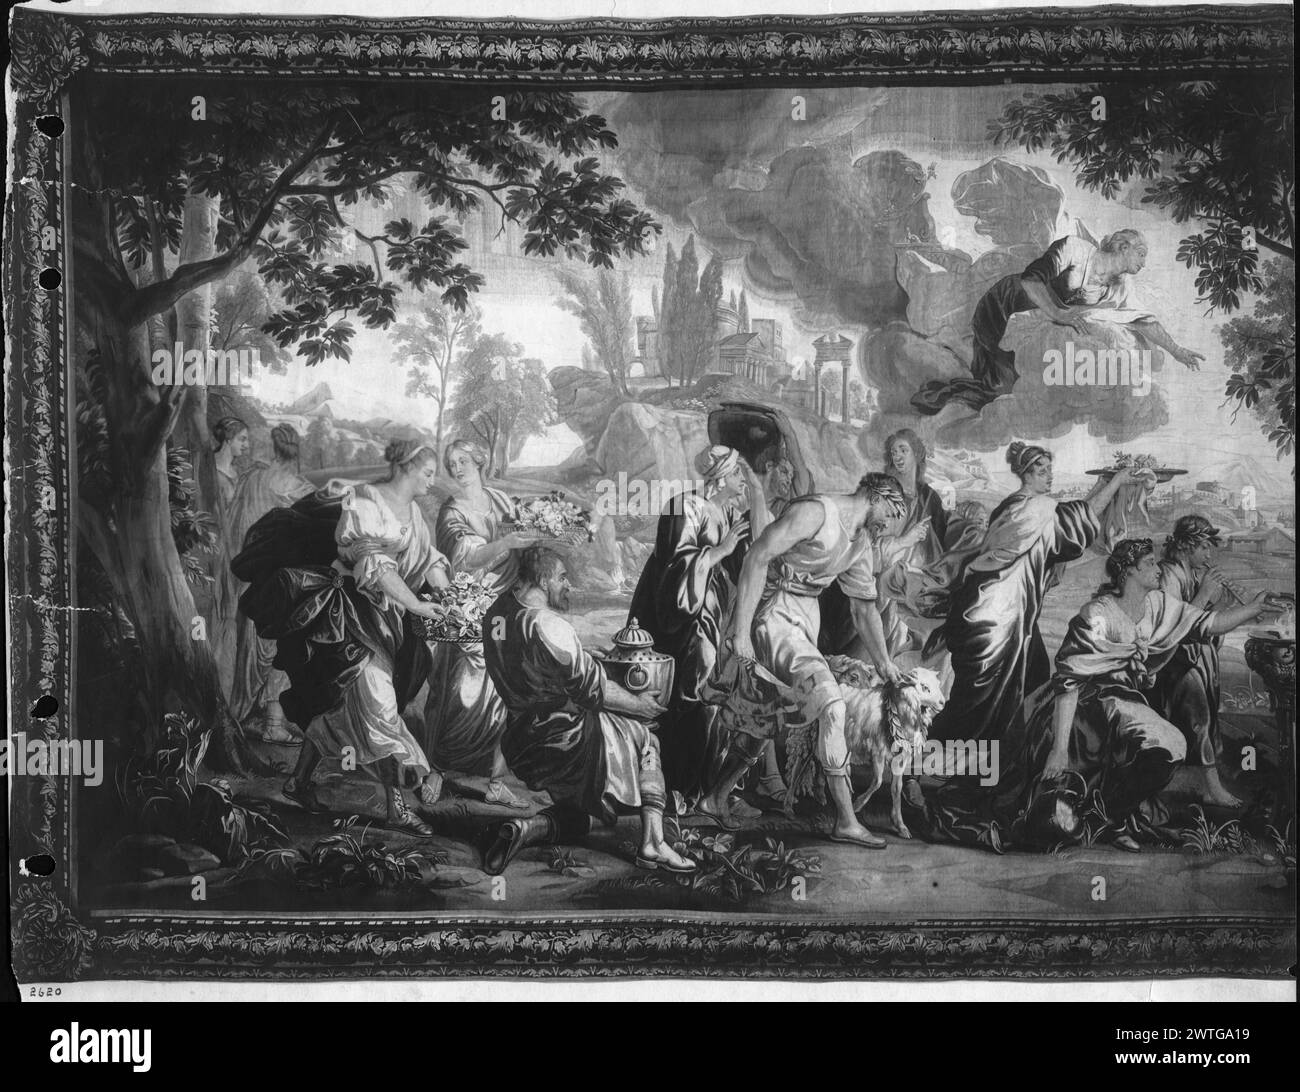 Die Psyche, die als Göttin verehrt wird, befällt den Wut der Venus (Aphrodite). Orley, Jan van (Flämisch, 1665-1735) (Autor des Entwurfs) [Zeichner] Hecke, Peter van den (Flämisch, ACT.1711-1752) (Werkstatt, ATR.) [weaver] ca. 1710-1750 Gobelin Abmessungen: H 11'9' x B 29'9' Gobelin Materialien/Techniken: Unbekannt Kultur: Flämisches Weberzentrum: Brüssel Eigentumsgeschichte: Französisch & Co. USA, Kentucky, Louisville, J.B. Speed Art Museum. Verwandte Werke: Panels in Set: GCPA 0238729-0238730, 0240898-0240899; stilistisch ähnliche Sets von van Orley, mit gleicher Umrandung, umfassen GCPA 0240893-0240897 (Arms of M) Stockfoto